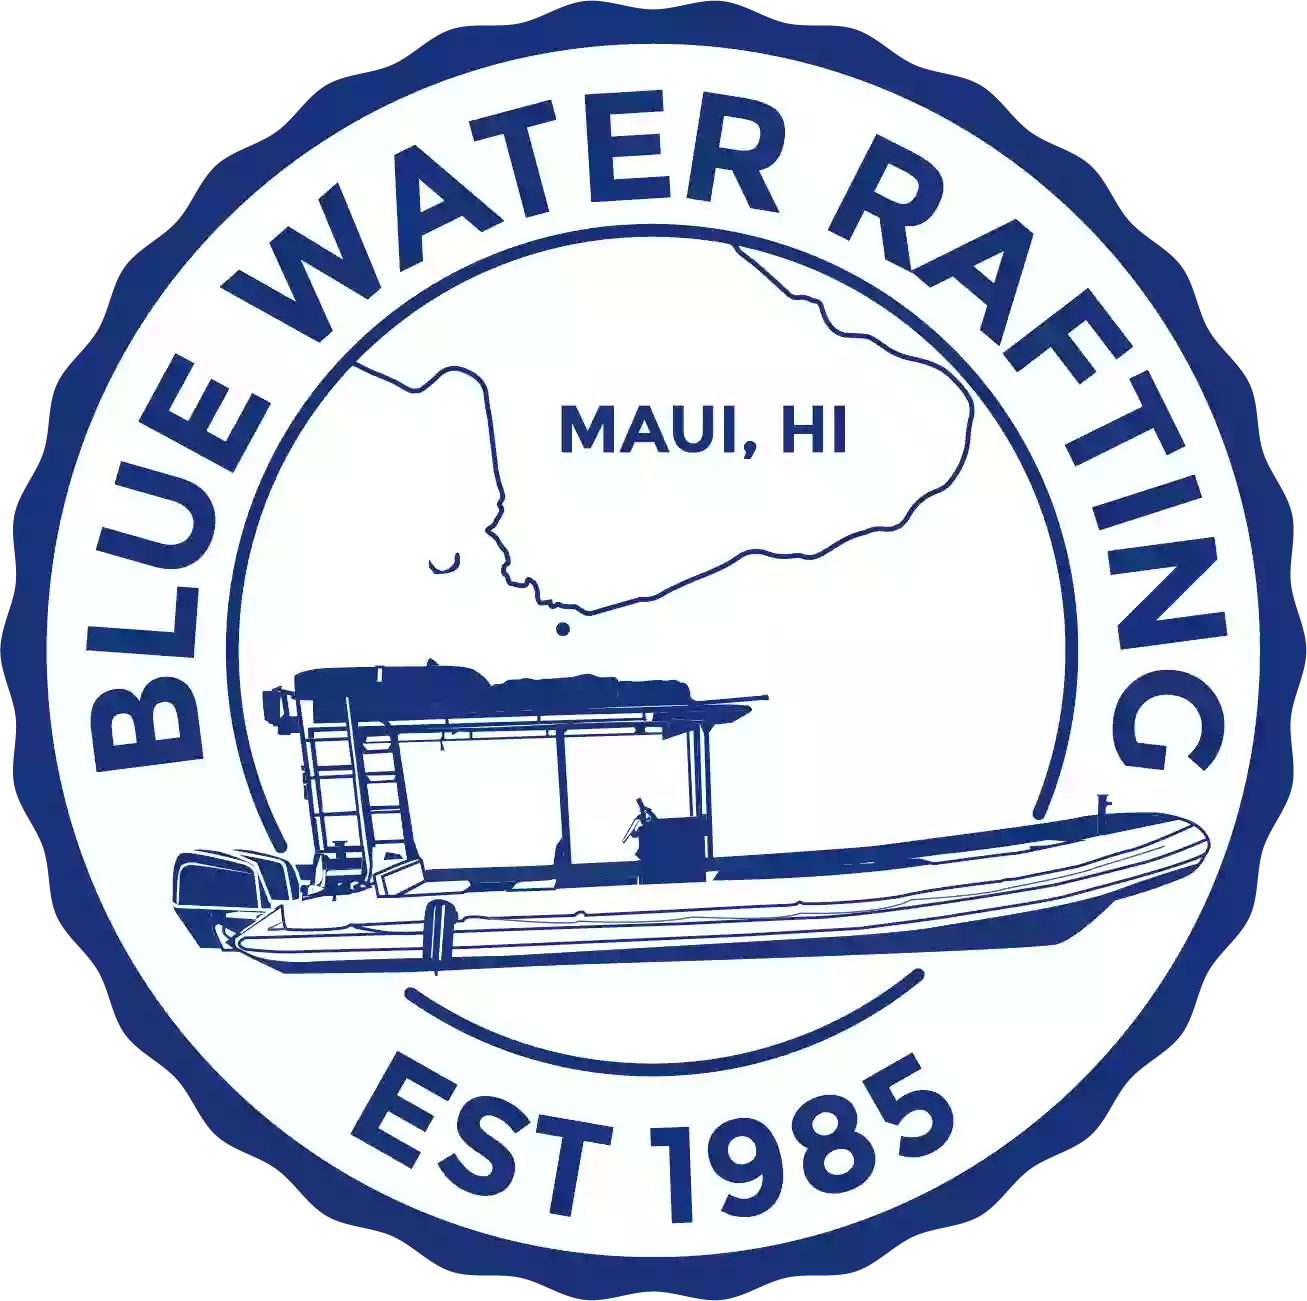 Blue Water Rafting